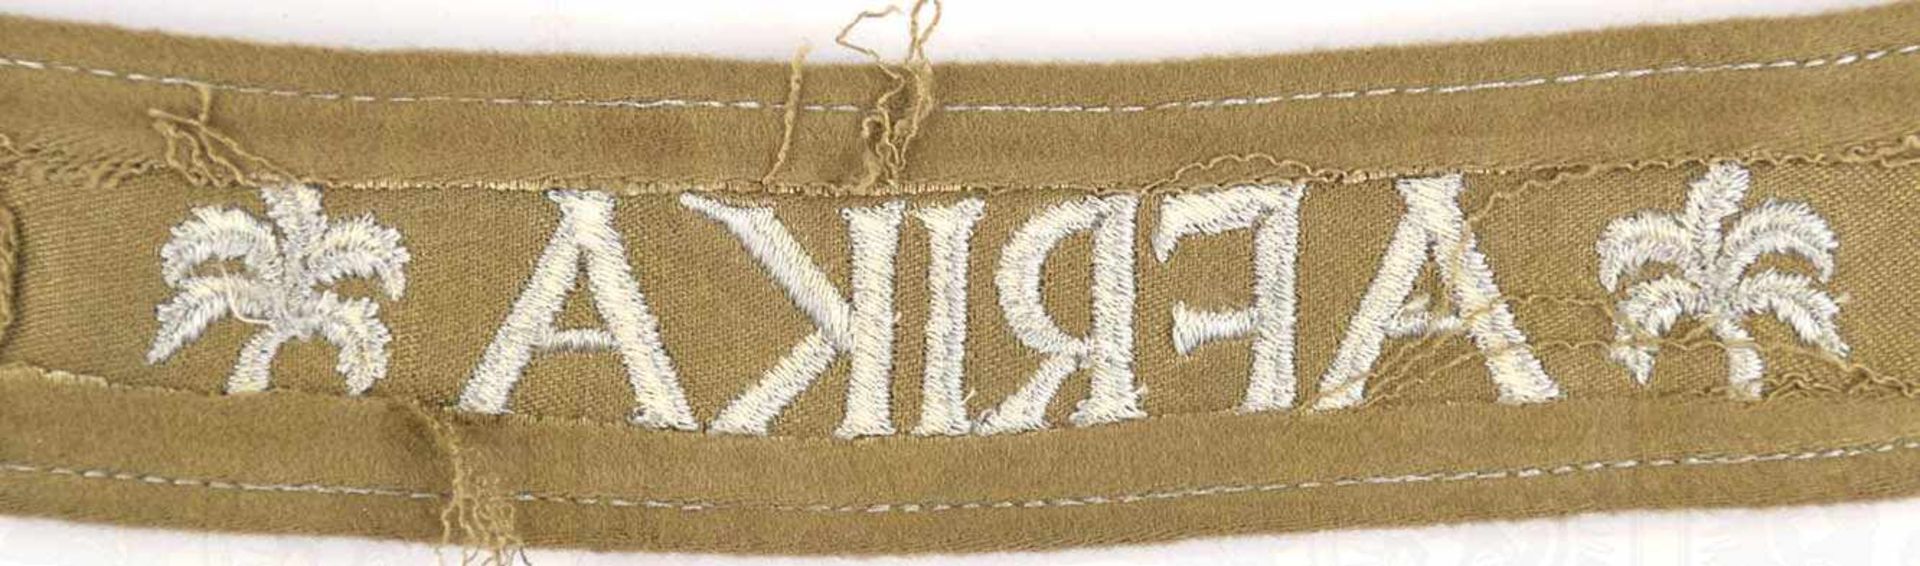 ÄRMELBAND „AFRIKA“, khakifarb. Tuch, slb.grauer masch.-gestickter Text, L. 44 cm, dazu Besitzzeugnis - Image 4 of 4